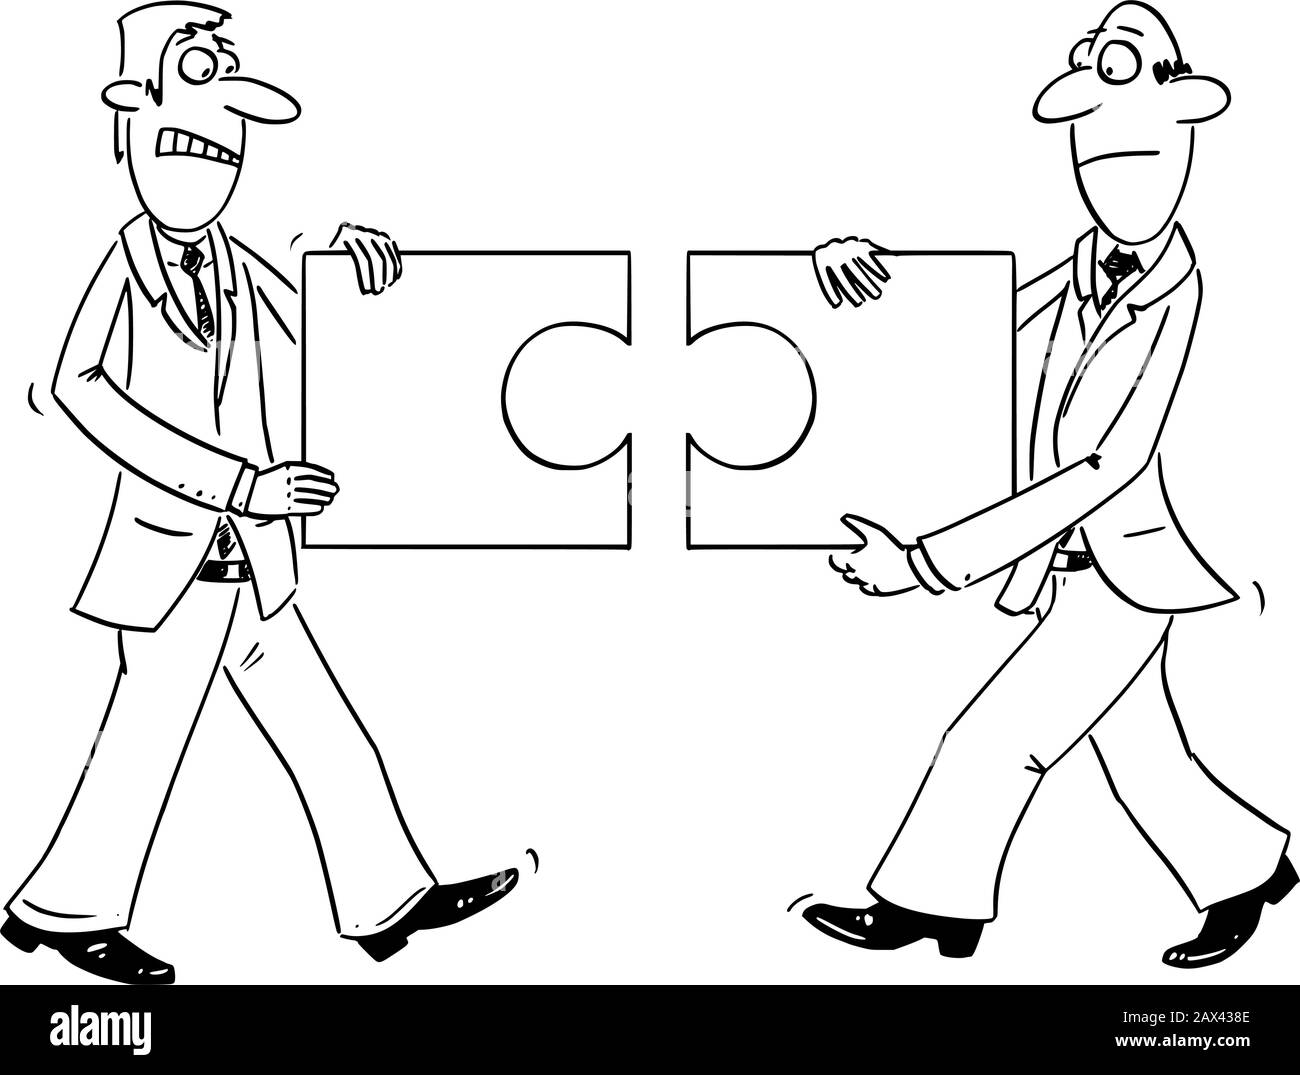 Vector lustige Comic-Cartoon-Zeichnung von zwei Geschäftsleuten, die unanrüchige Puzzleteile, die nicht zusammenpassen, enthalten.Konzept des Problems in der Zusammenarbeit. Stock Vektor